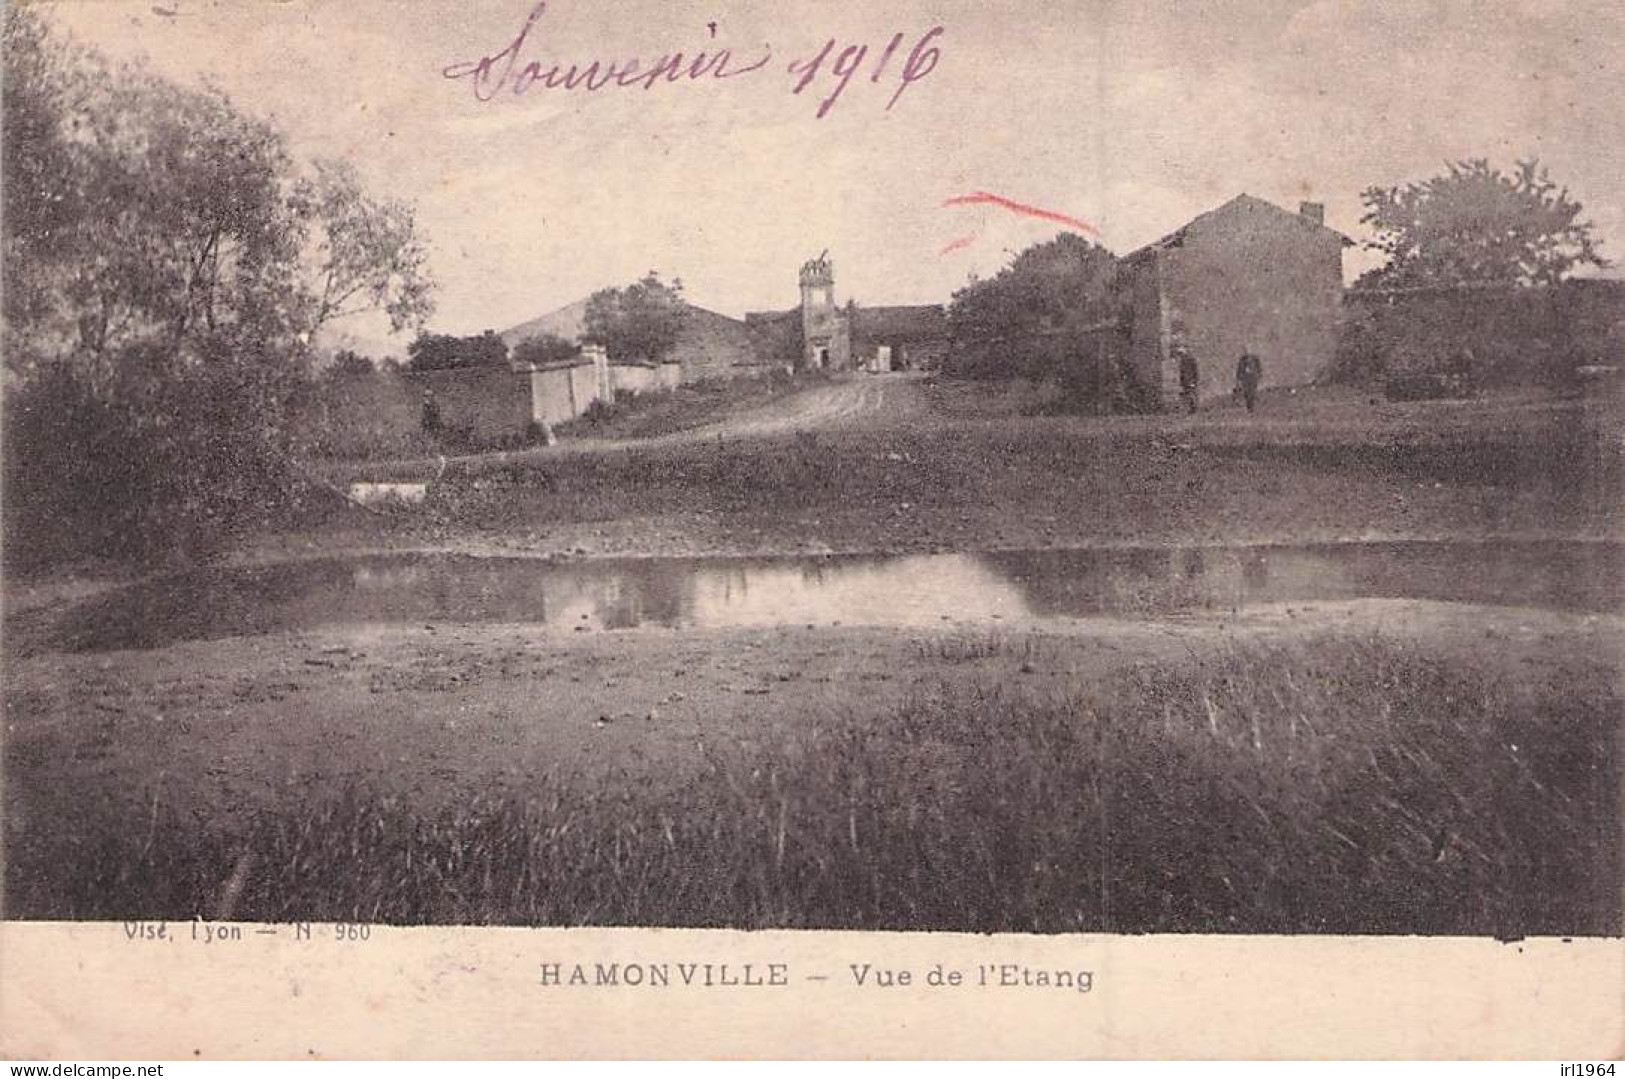 HAMONVILLE VUE DE L'ETANG 1916 - Guerre 1914-18